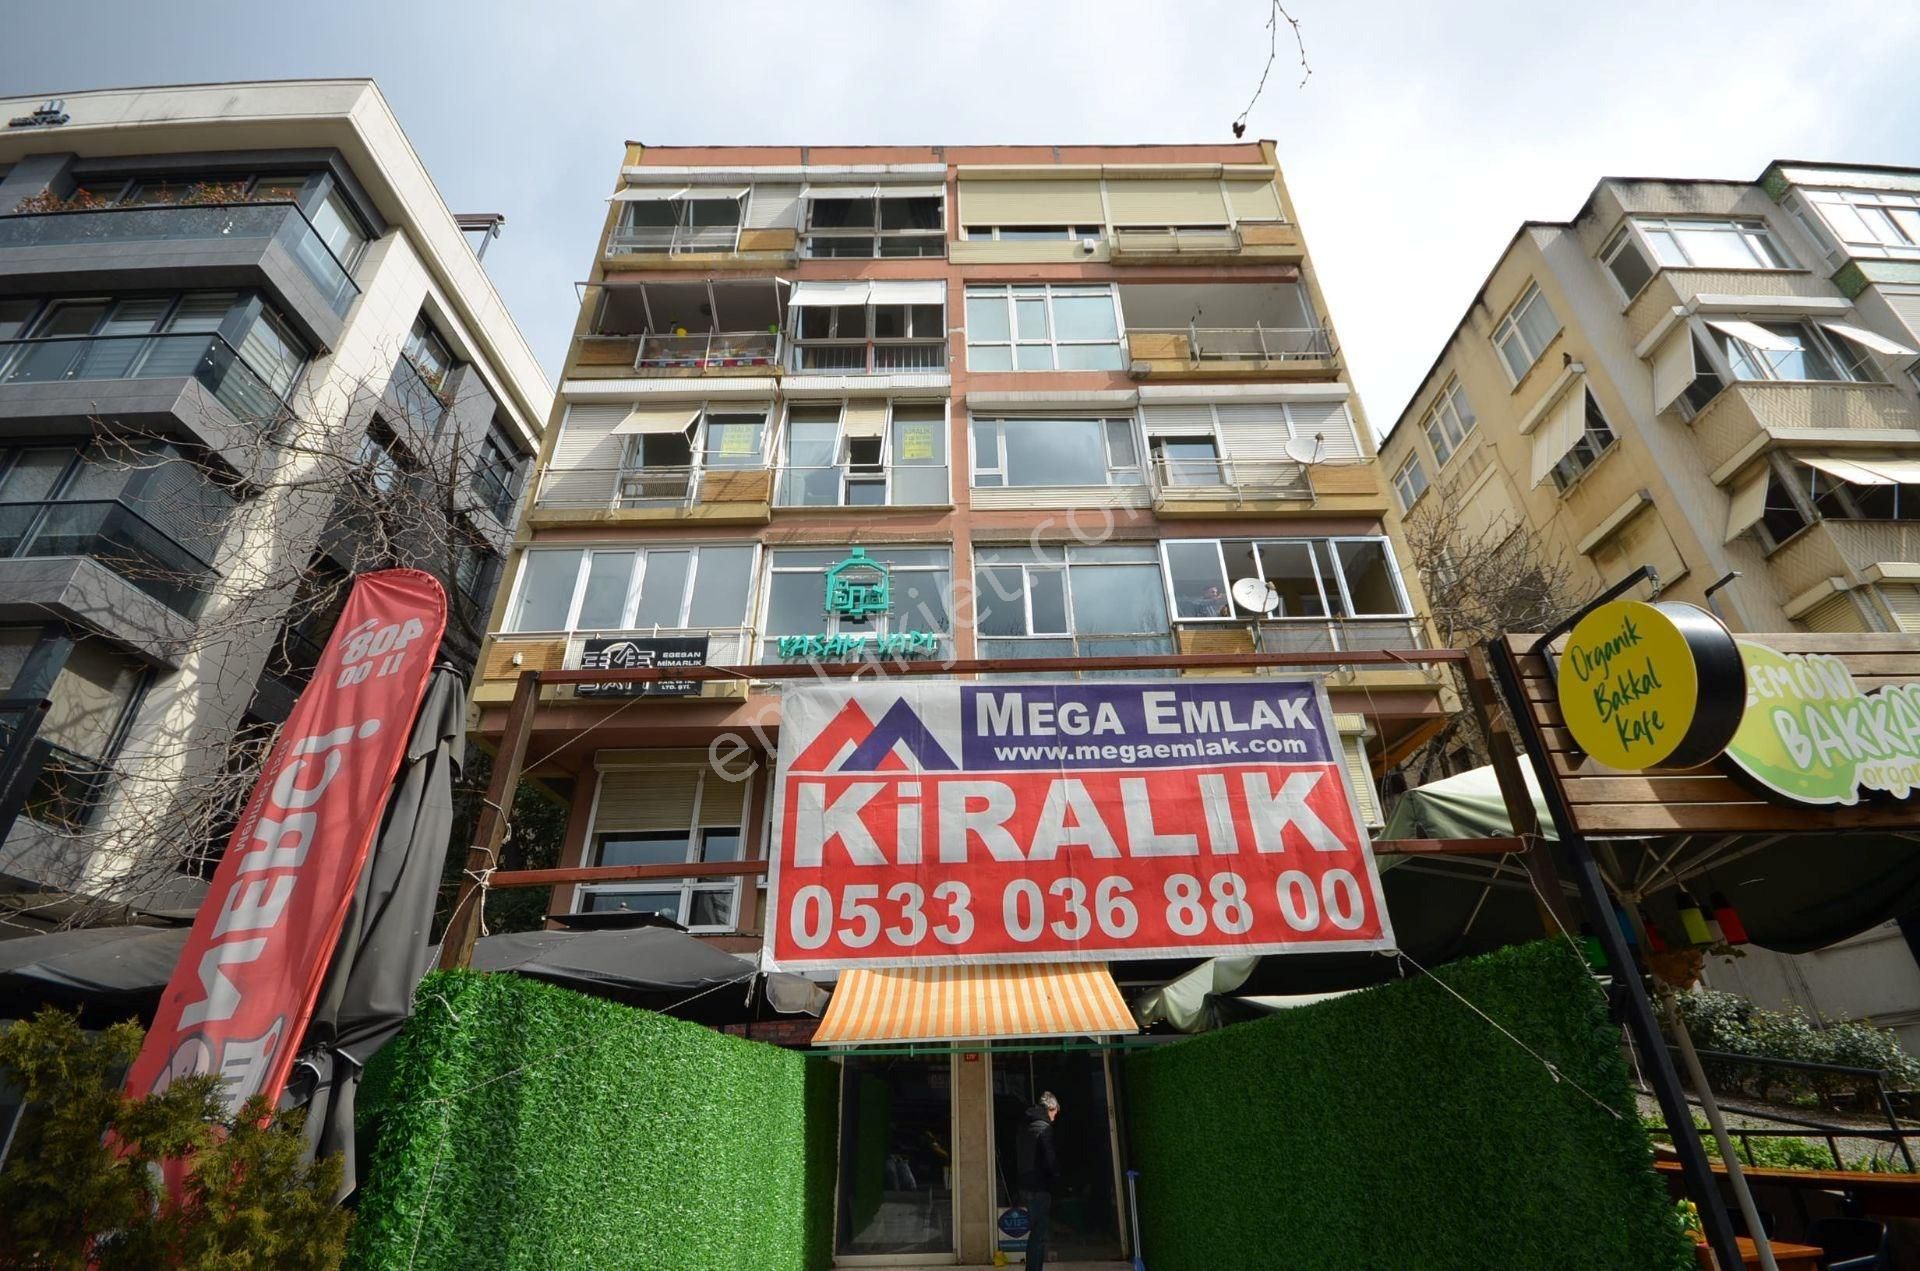 İstanbul Kadıköy Kiralık Dükkan & Mağaza Çiftehavuzlar Bağdat Caddesi Üzerinde Kiralık Dükkan